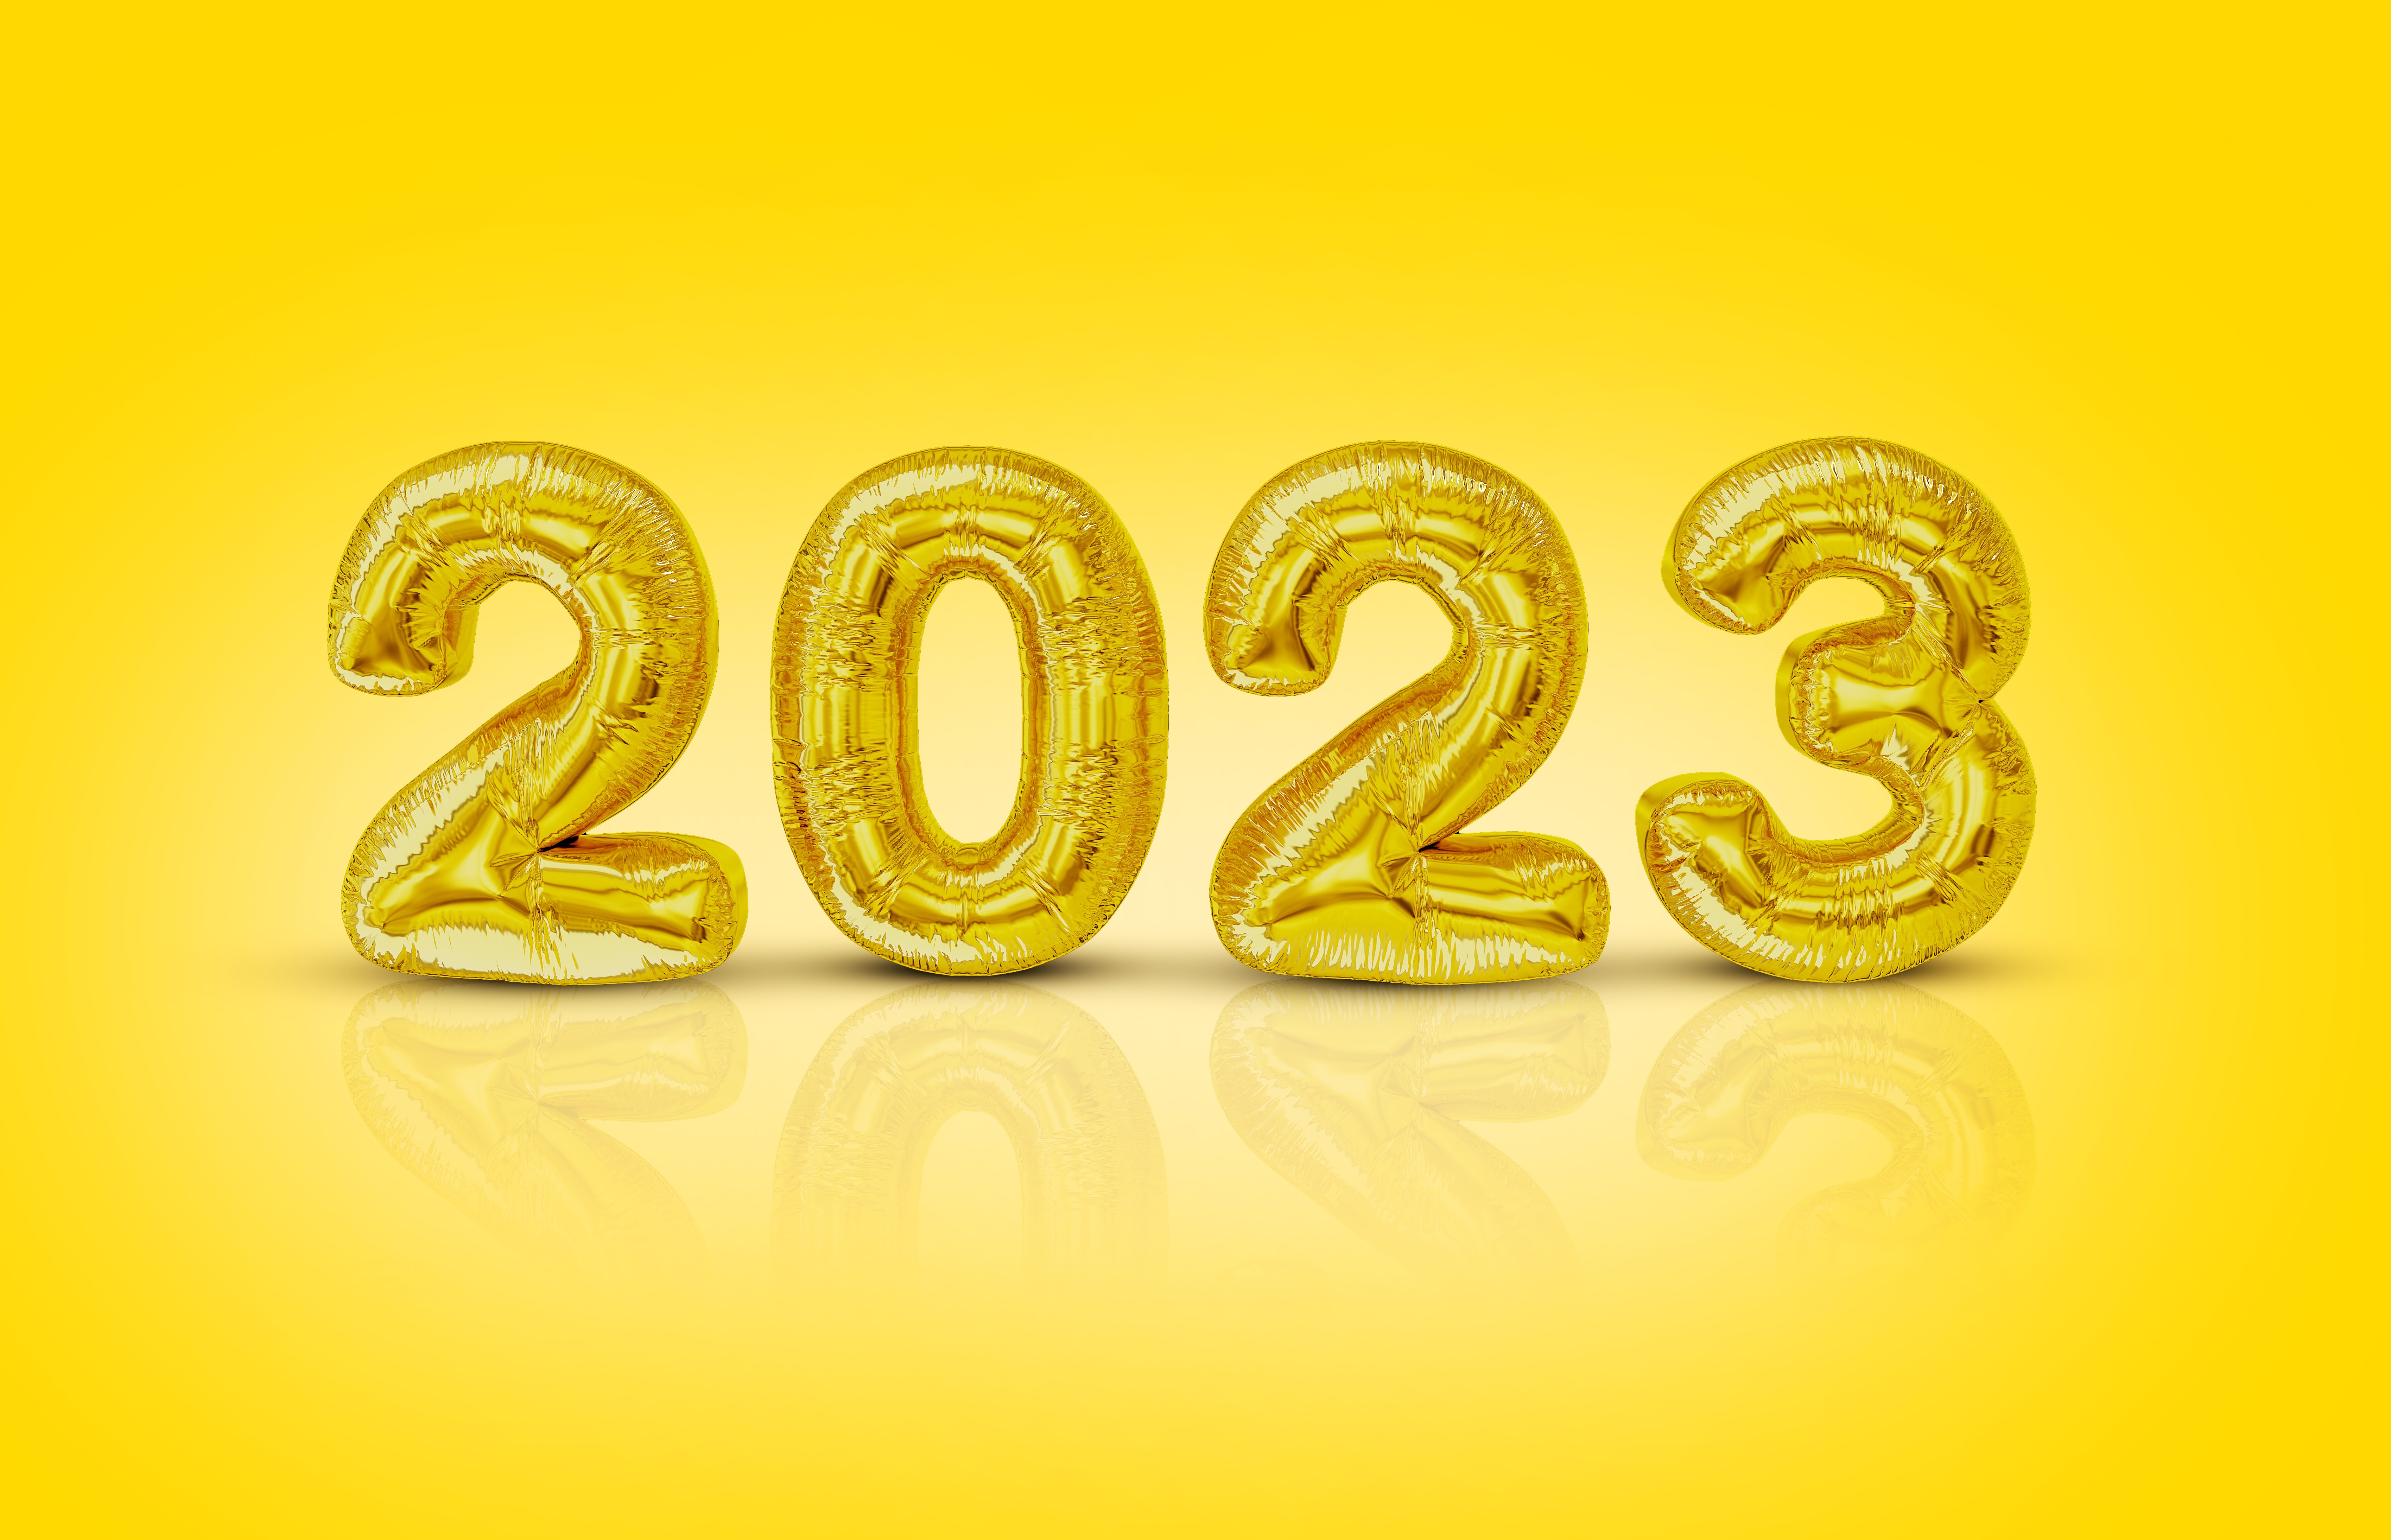 Hãy cùng đón chào năm mới 2024 bằng những bức hình đẹp nhất! Hình ảnh sẽ mang bạn đến những món quà, tình cảm, hy vọng và sự may mắn cho năm mới. Hãy cùng xem để tìm kiếm những điều mới mẻ và thú vị mà năm mới mang lại.